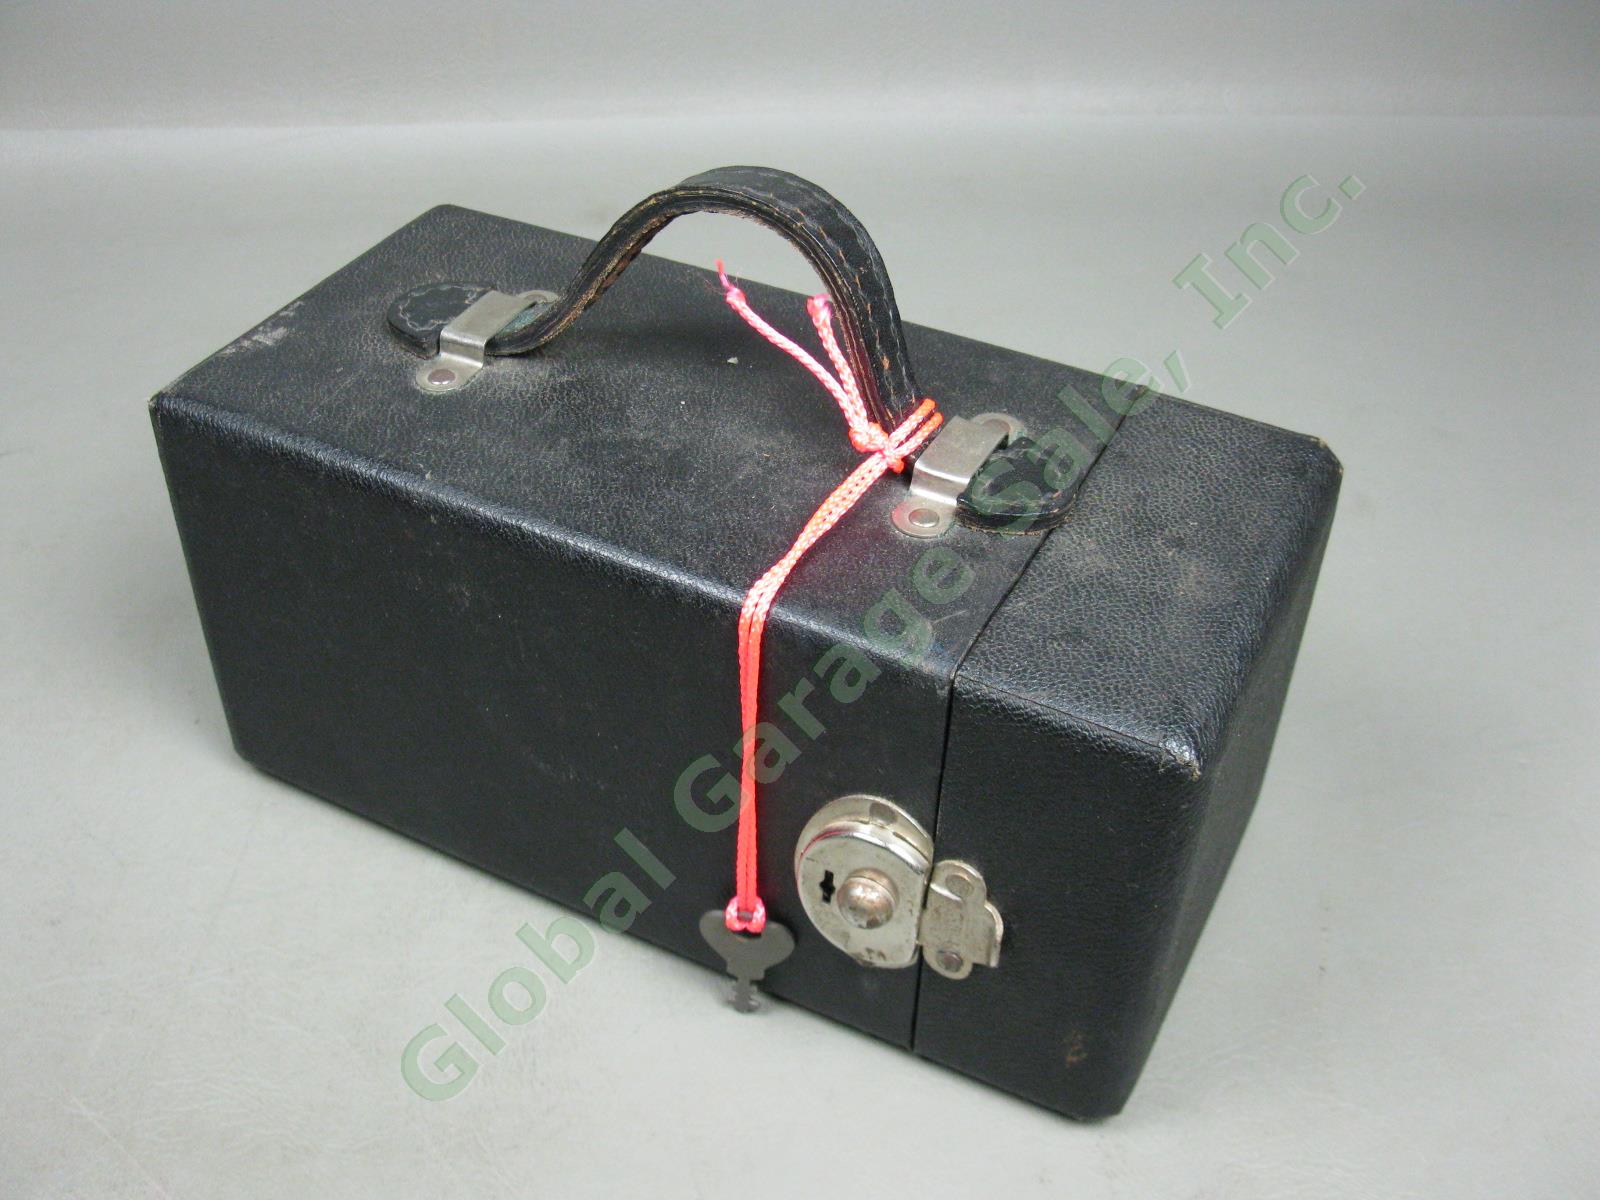 Vibroplex Super Deluxe Presentation Telegraph Key Morse Code Bug +Case 388604 NR 9